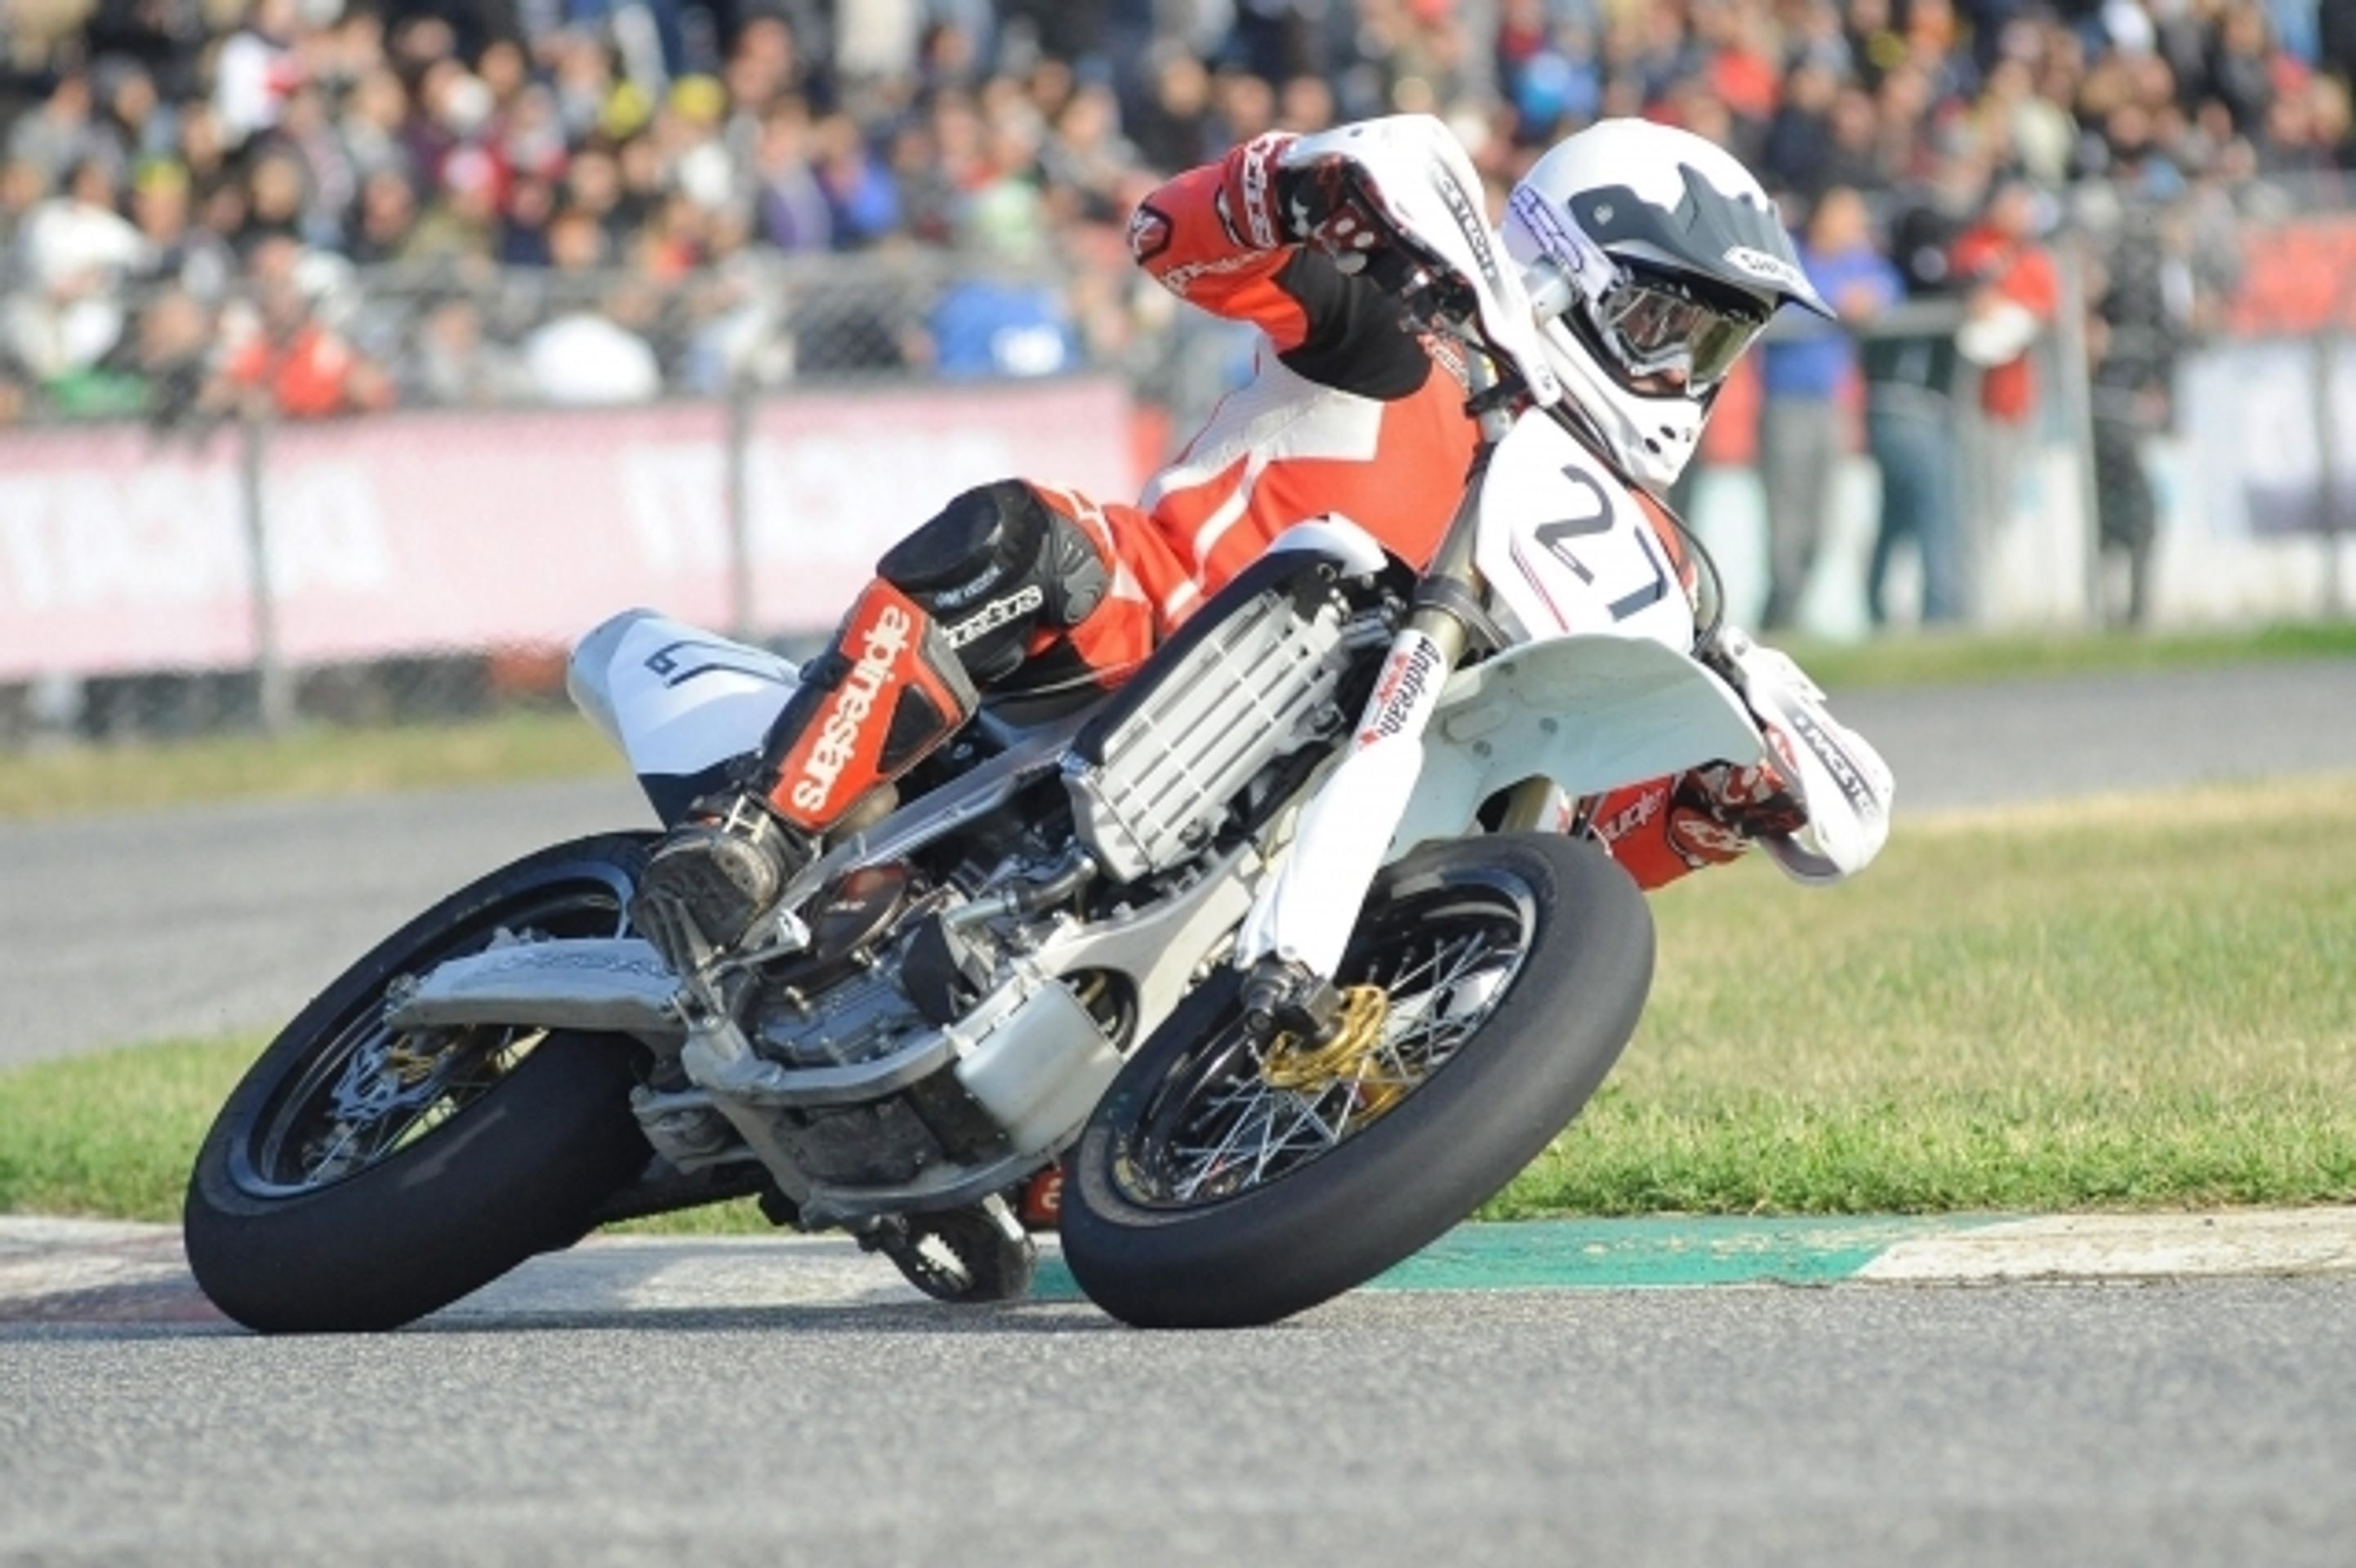 Motocyklový závodník Doriano Romboni zahynul při vzpomínce na Marka Simoncelliho - 1 - GALERIE: Motocyklový závodník Doriano Romboni zahynul při uctění památky Marka Simoncelliho (3/3)